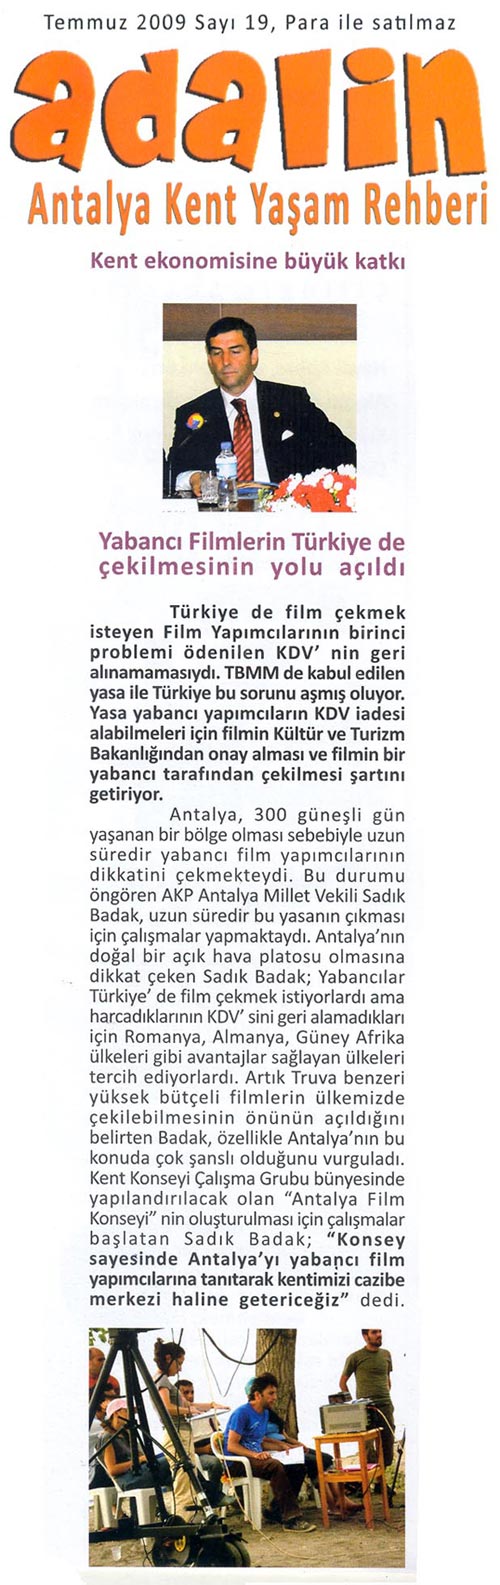 Adalin - Yabancı Filmlerin Türkiye'de Çekilmesinin Yolu Açıldı - Temmuz 2009